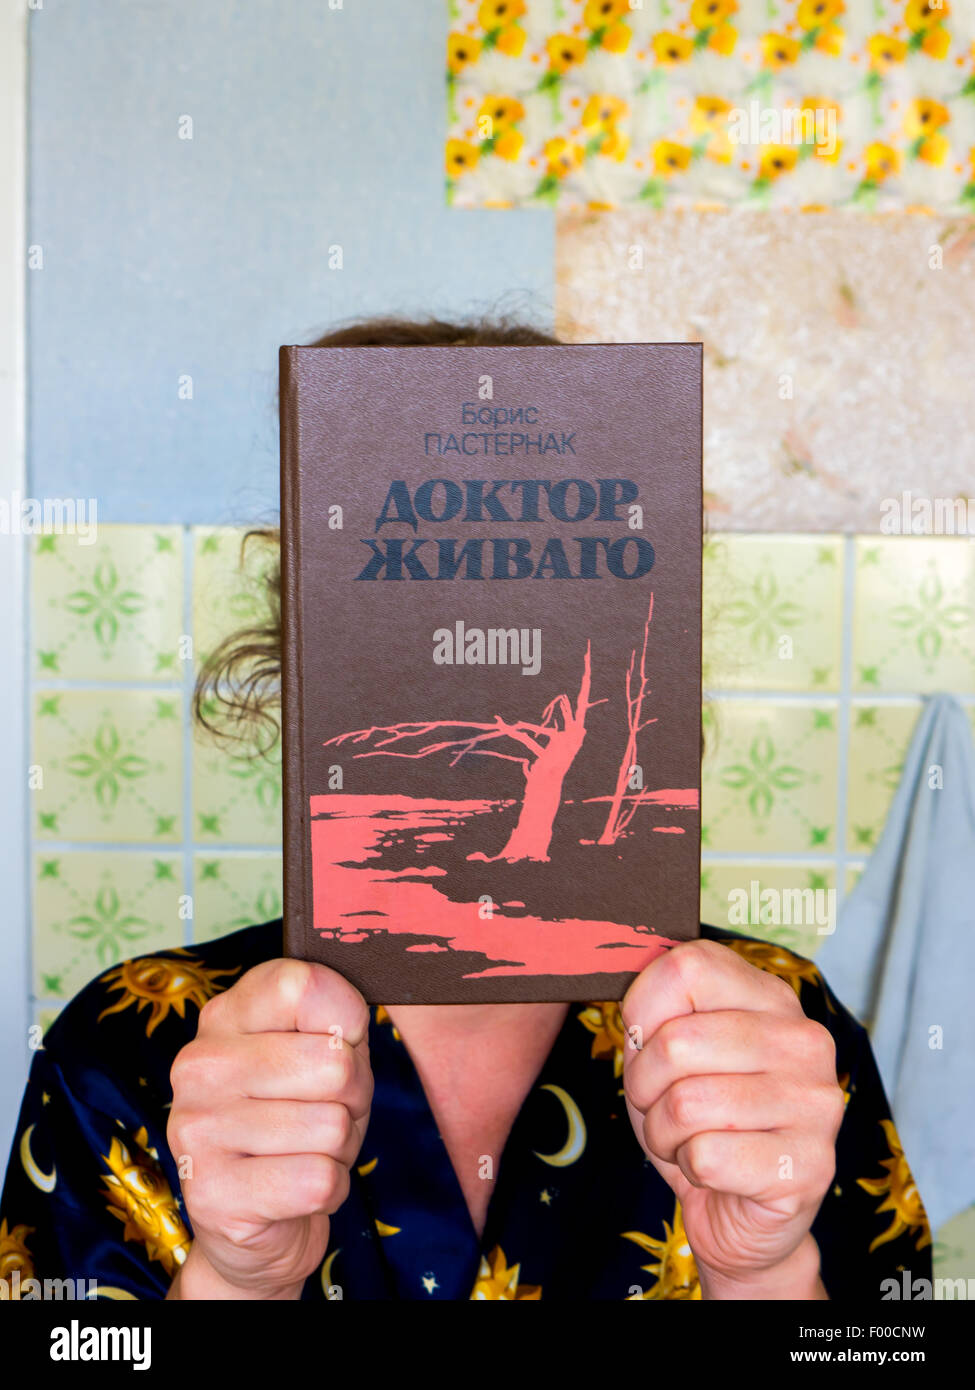 GOMEL, Weißrussland - 1. August 2015: Mädchen hält ein Buch von Boris Pasternak "Doktor Schiwago". Stockfoto